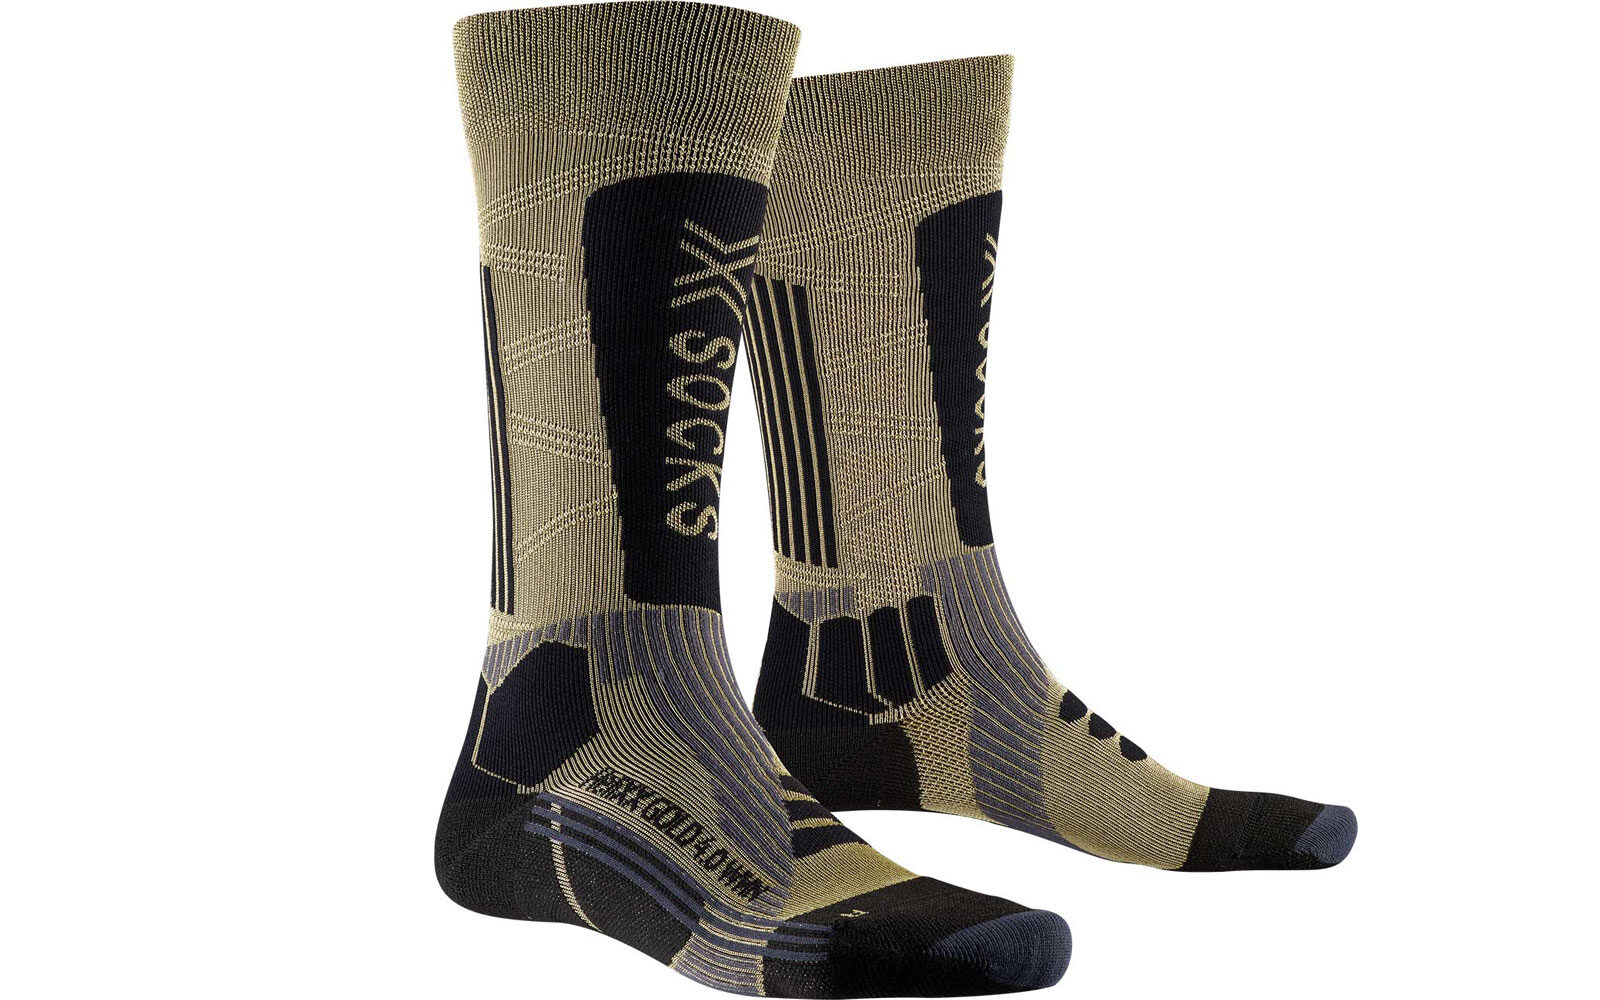 X-Socks Helixx Gold 4.0, calze hi-tech con lieve compressione nelle zone funzionali dei muscoli, calzata aderente sul piede femminile, bande speciali che prevengono sfregamenti e vesciche nelle zone sensibili, sistema di termoregolazione e ventilazione. Euro 49,90